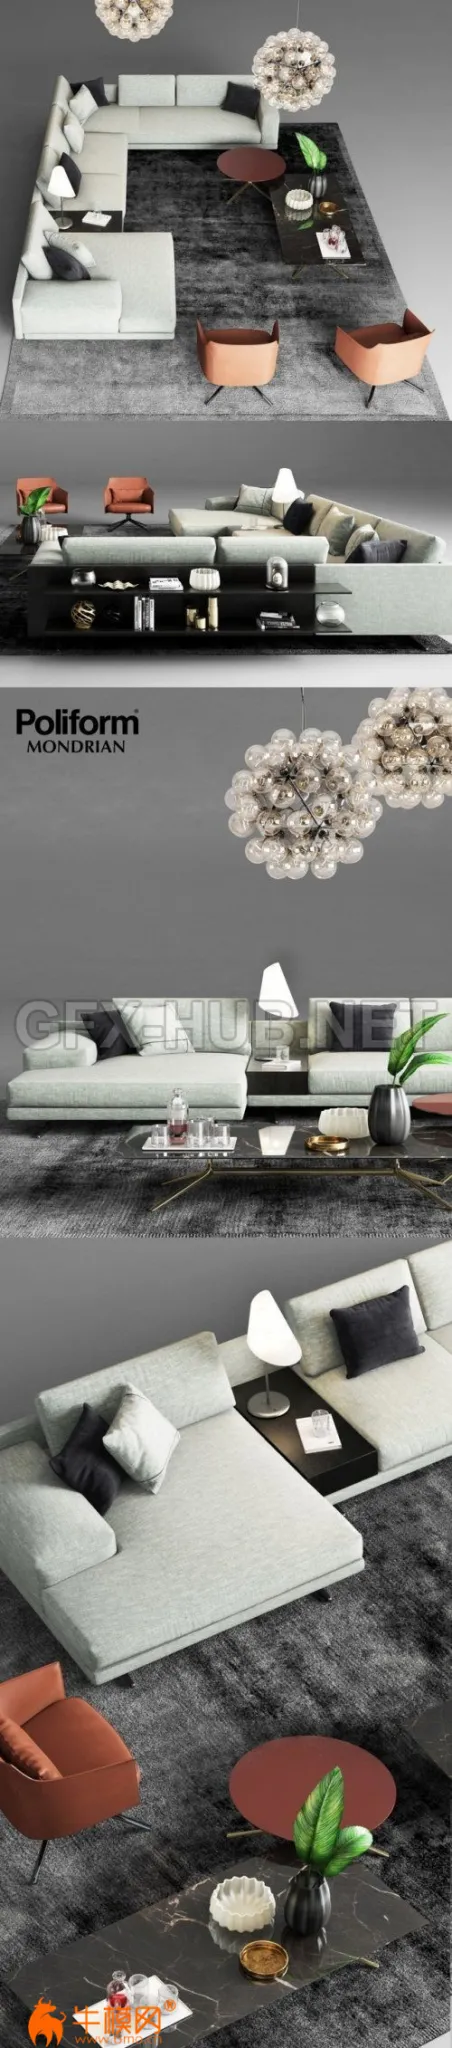 Poliform Mondrian Sofa 1 – 6069